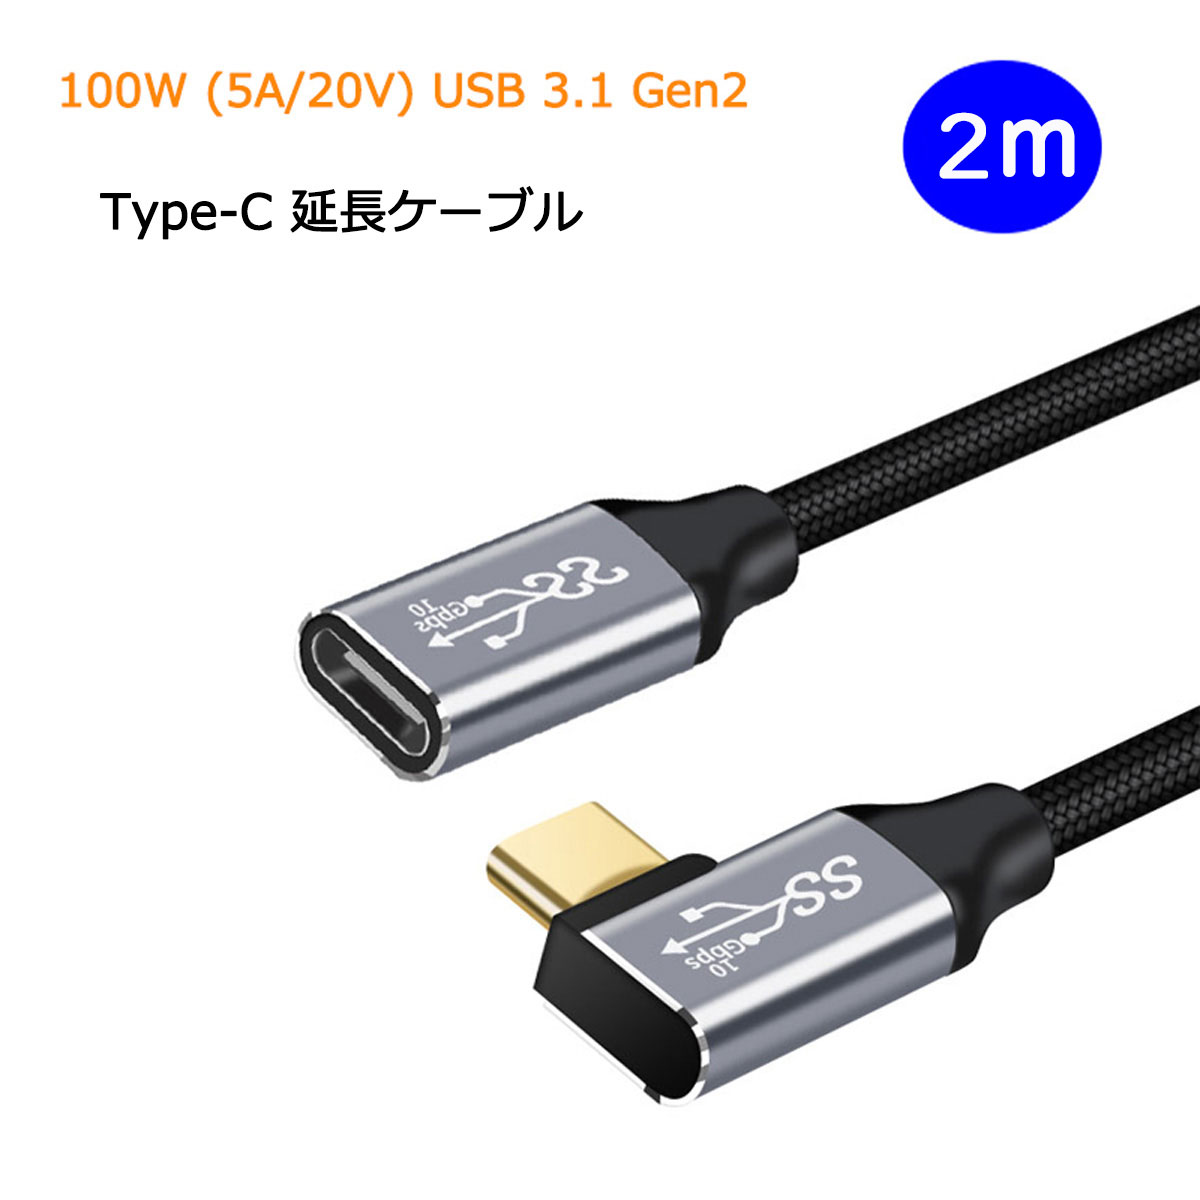 【あす楽・P10倍+クーポンあり】 L字 2m USB Type C 延長ケーブル 100W 5A PD対応 急速充電 USB 3.1 Gen2 10Gbps データ転送 4K/60Hz ..